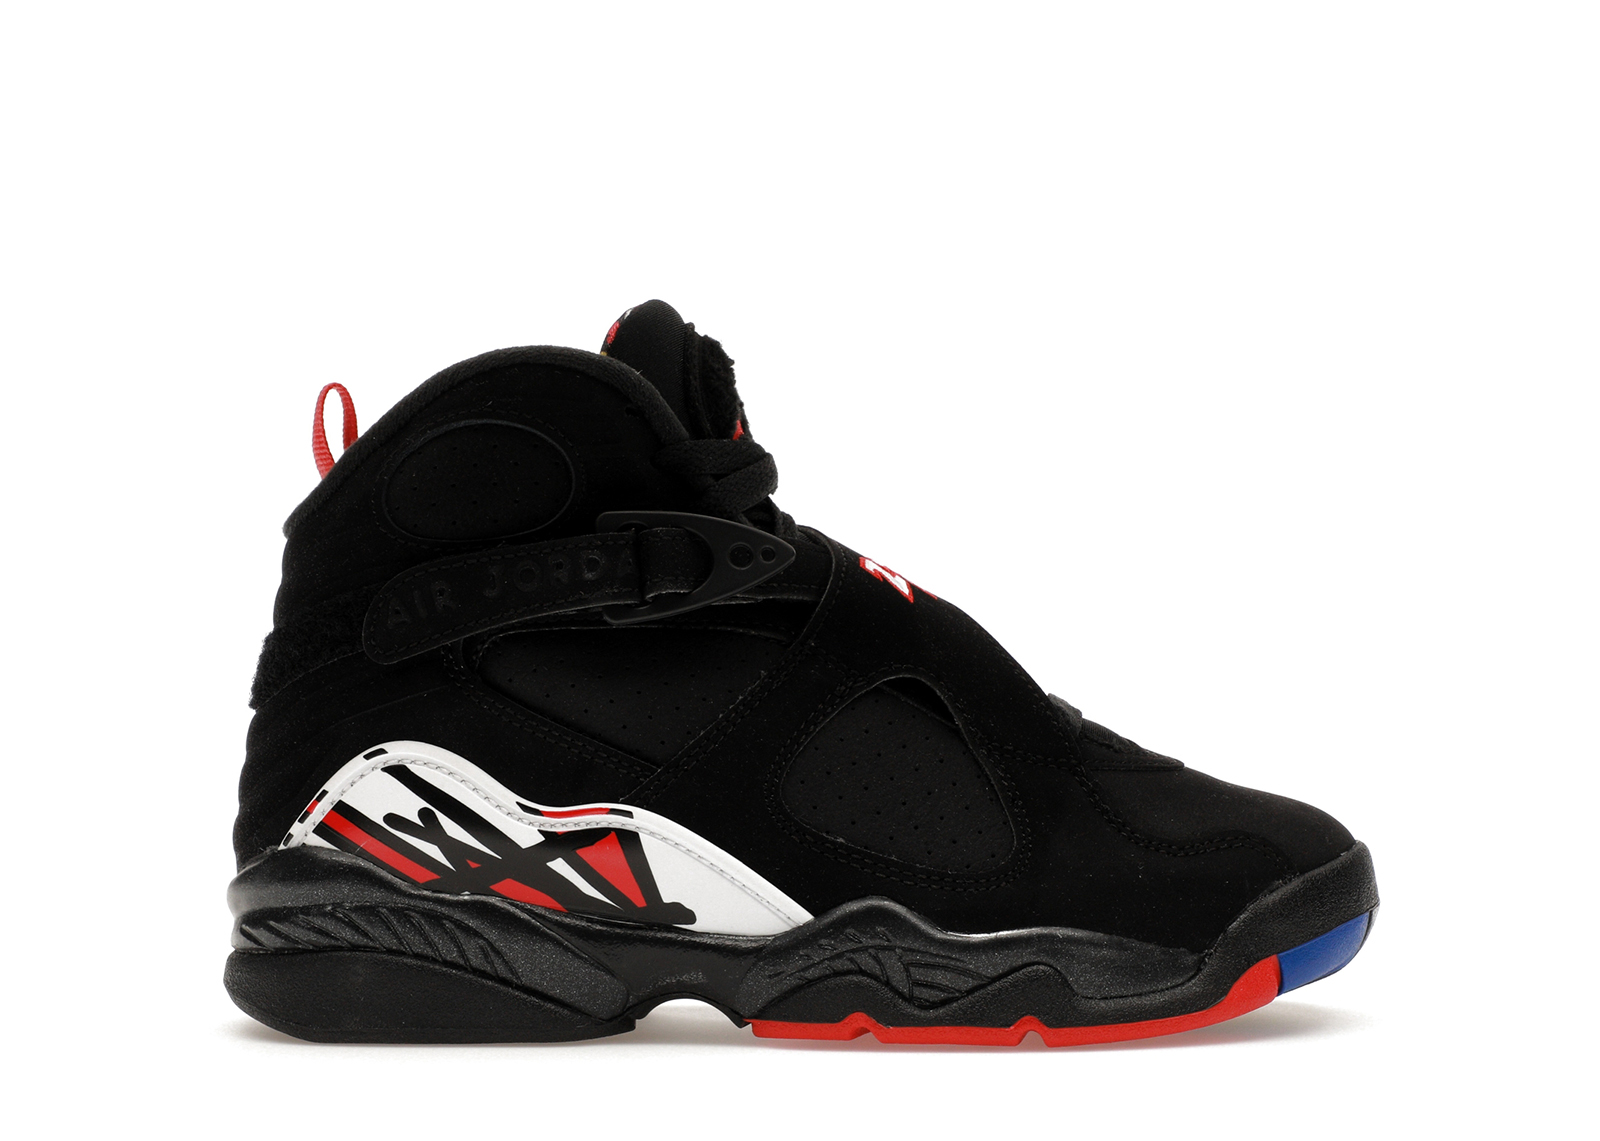 Buy Air Jordan 8 Shoes & New Sneakers - StockX